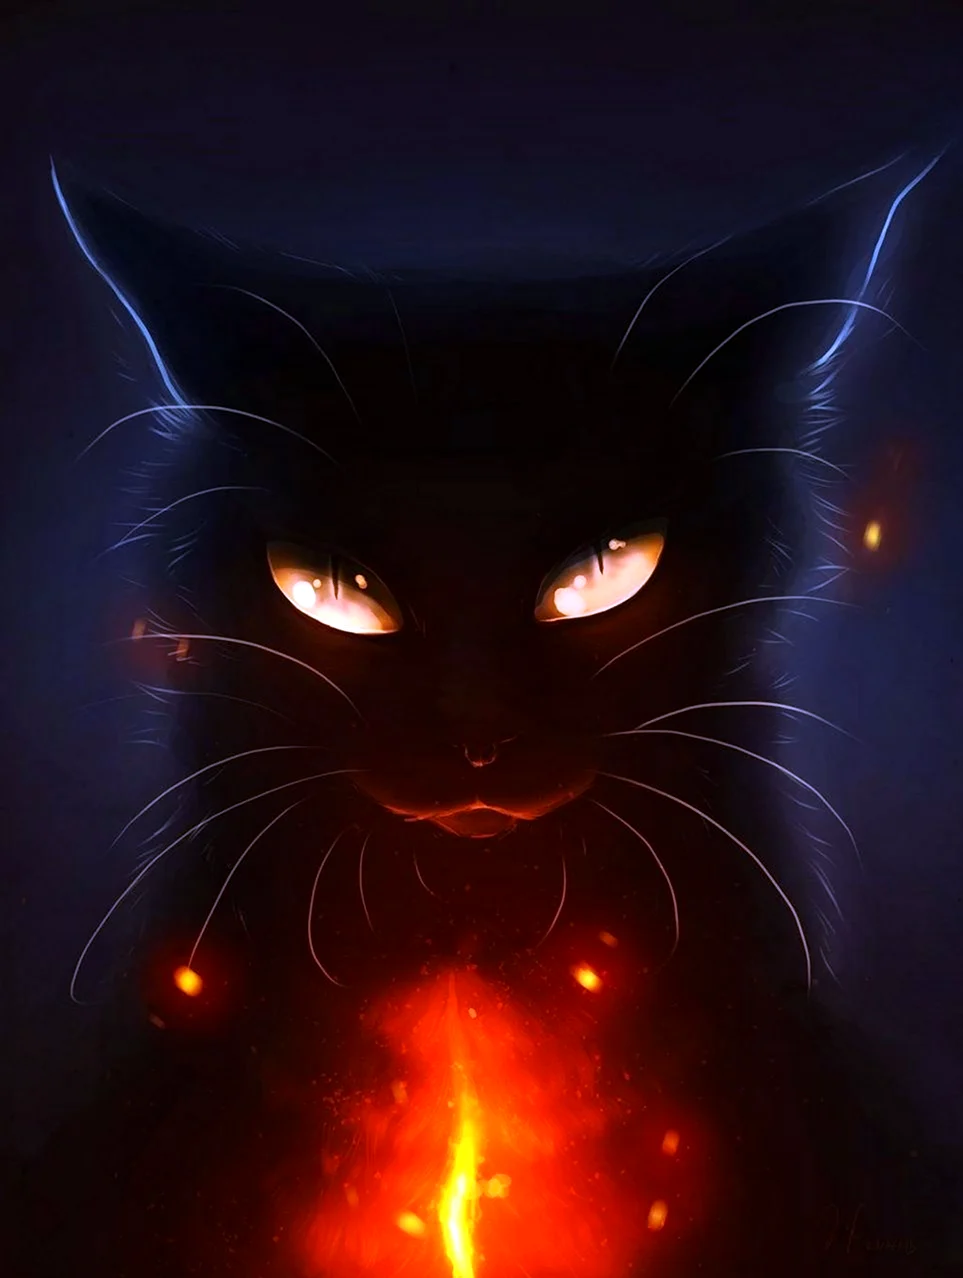 Черный кот коты Воители арт